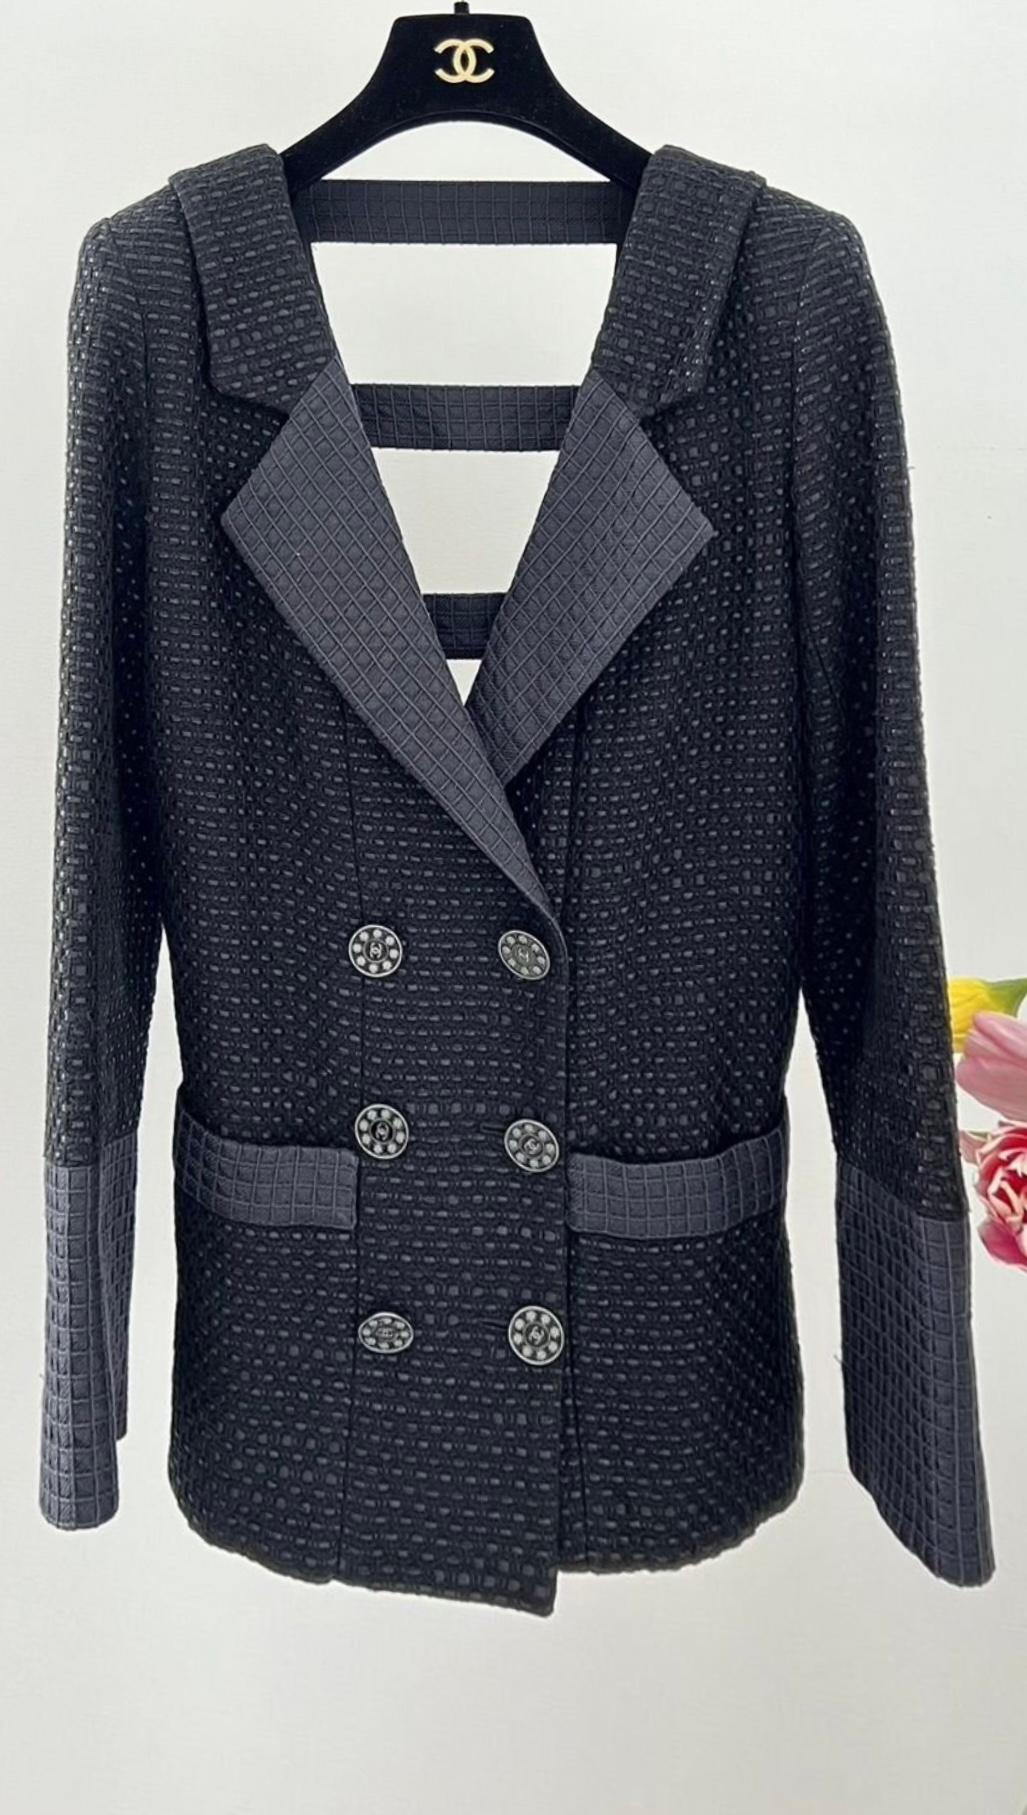 Chanel Runway Paris / Seoul Black Tweed Jacket For Sale 1